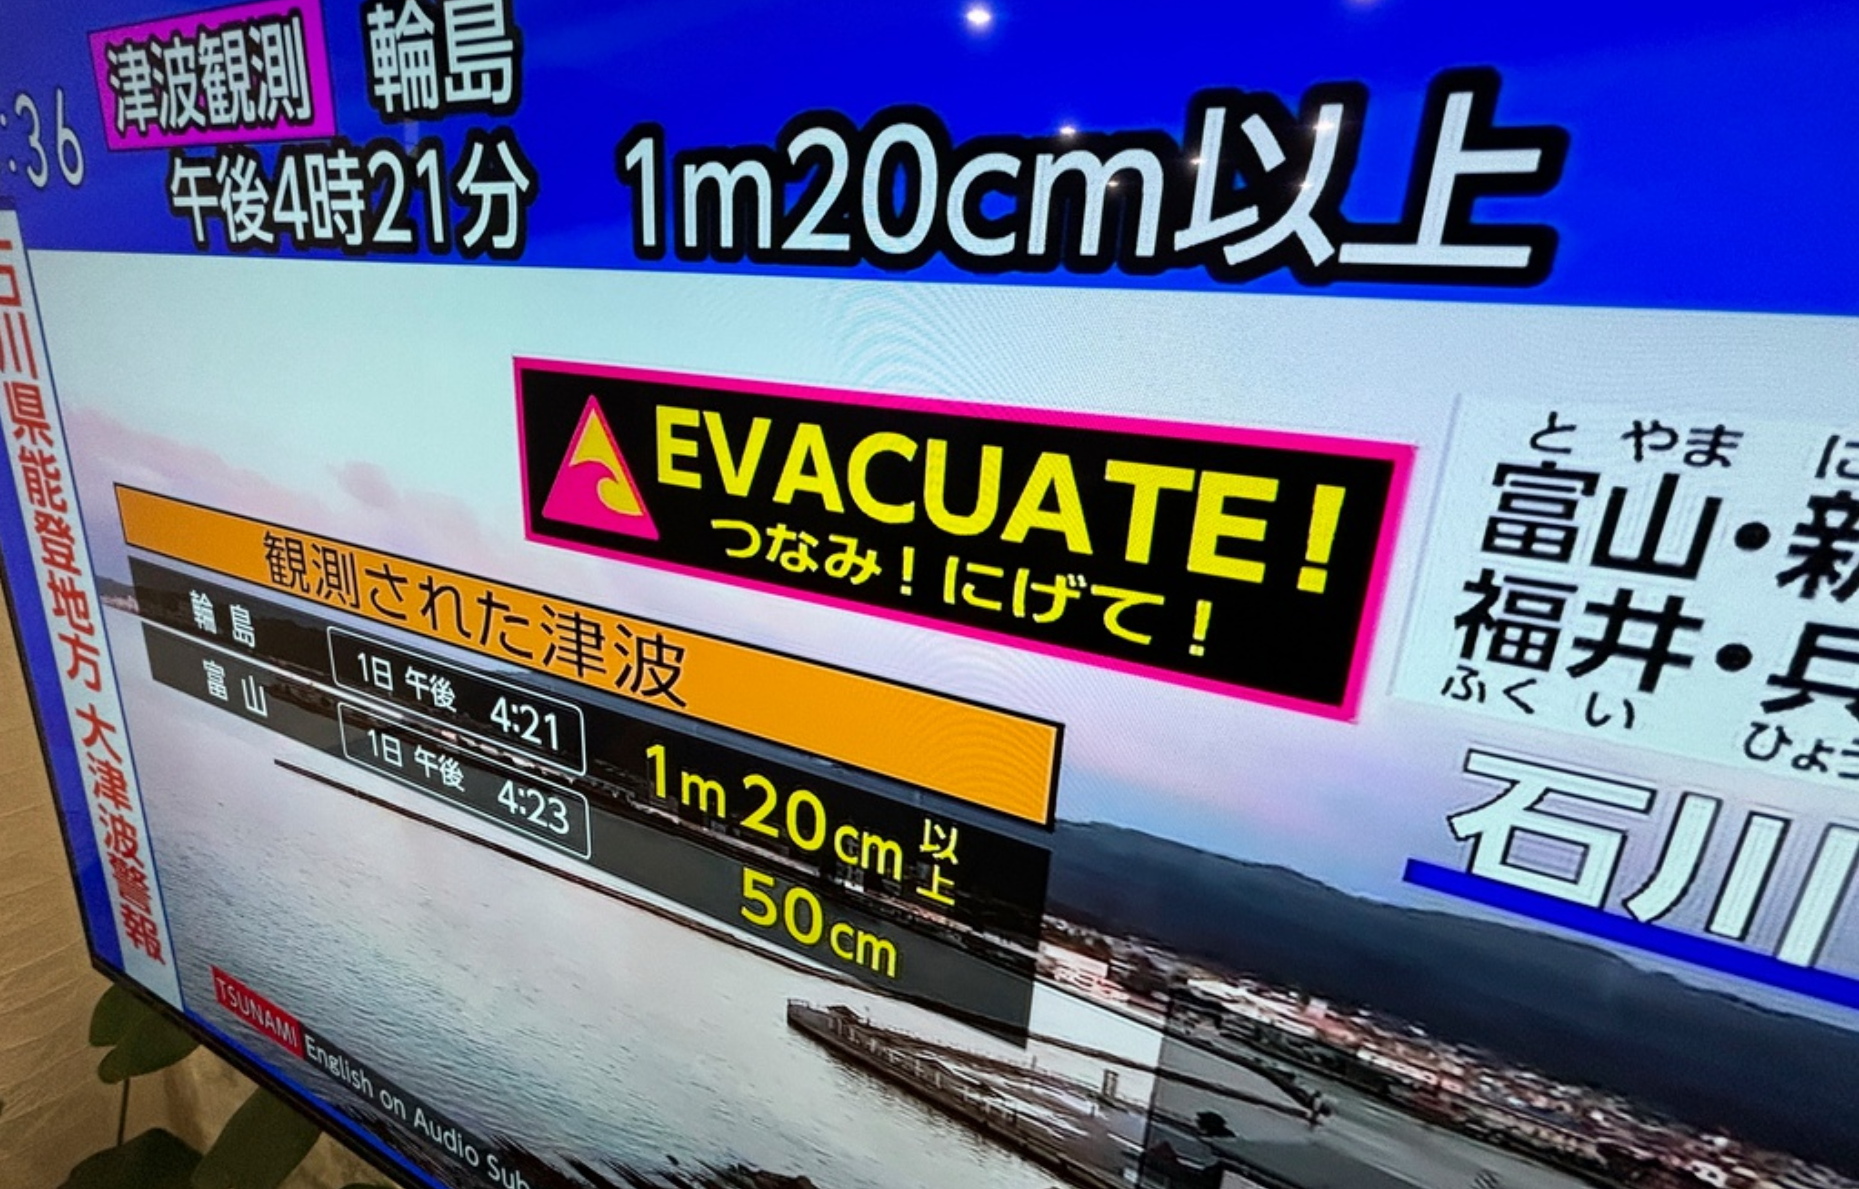 Människor längs kusten har under dagen uppmanats att evakuera.